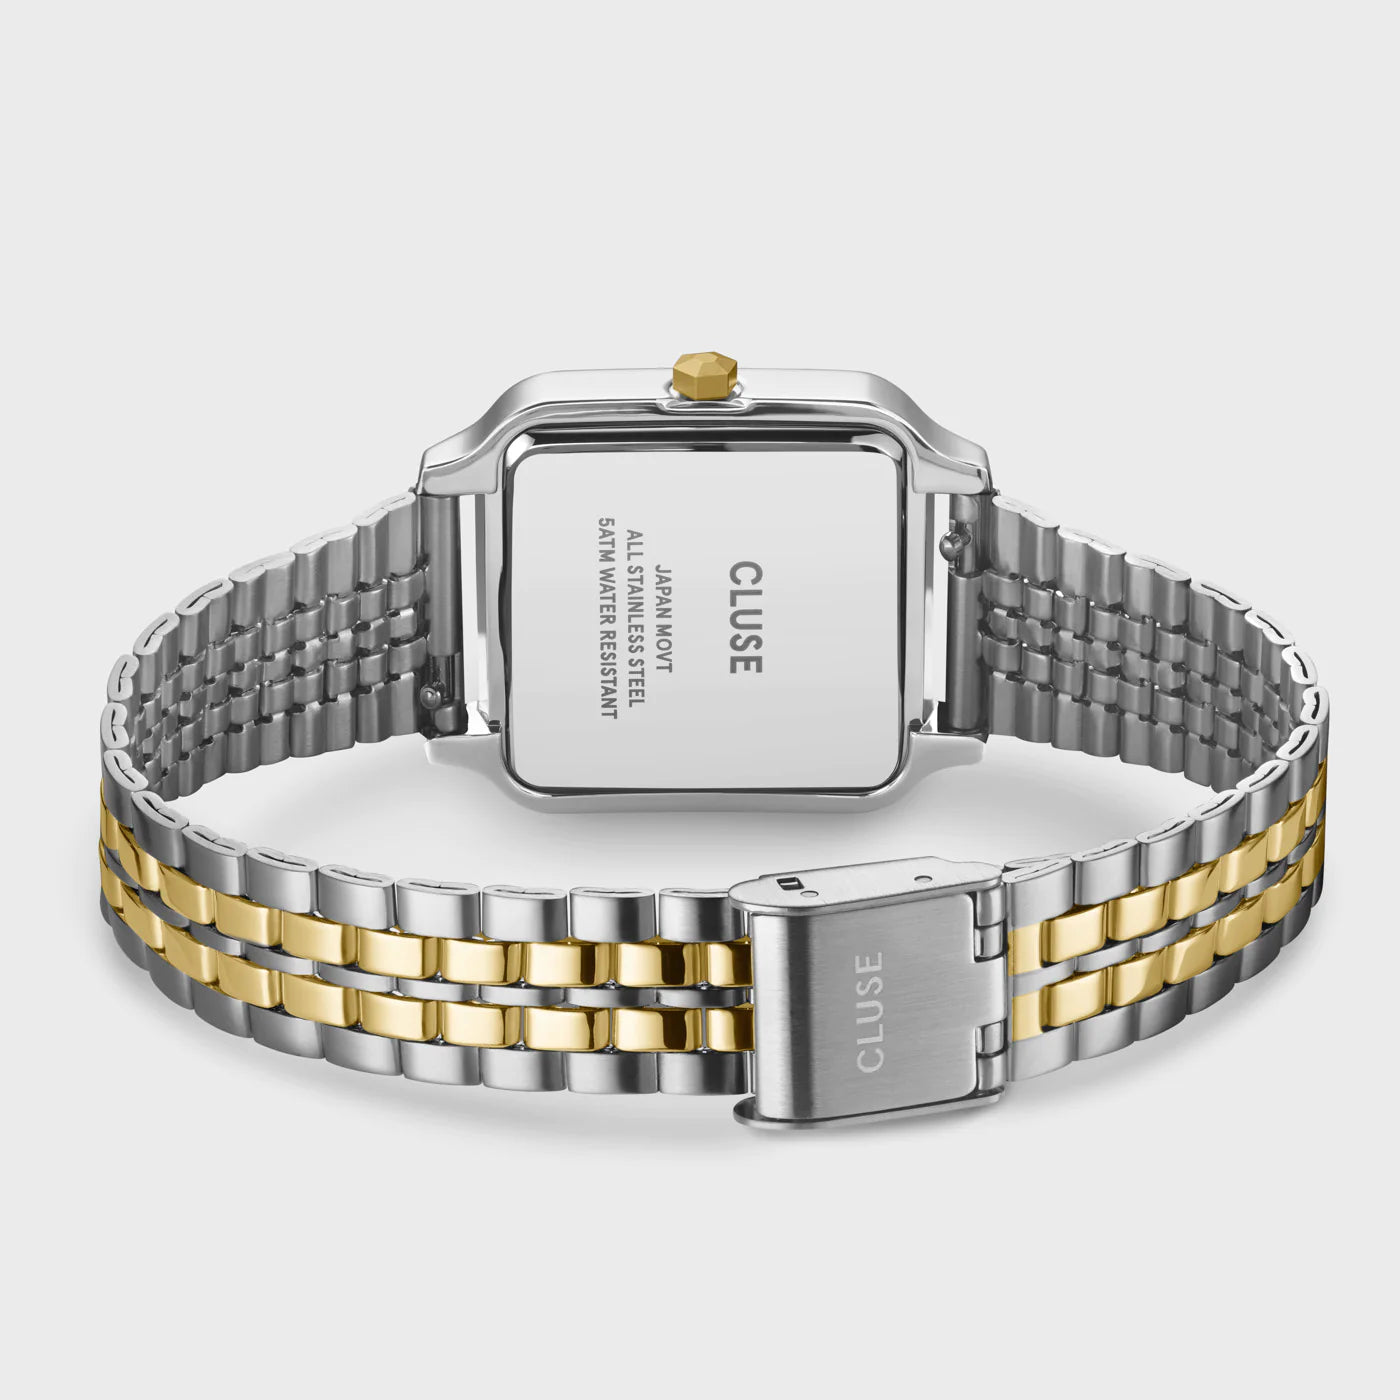 Gehäußeboden und Armband der Cluse Stahl-Uhr "Gracieuse" in Stahl-Gold-Optik (bicolor) mit weißem Zifferblatt